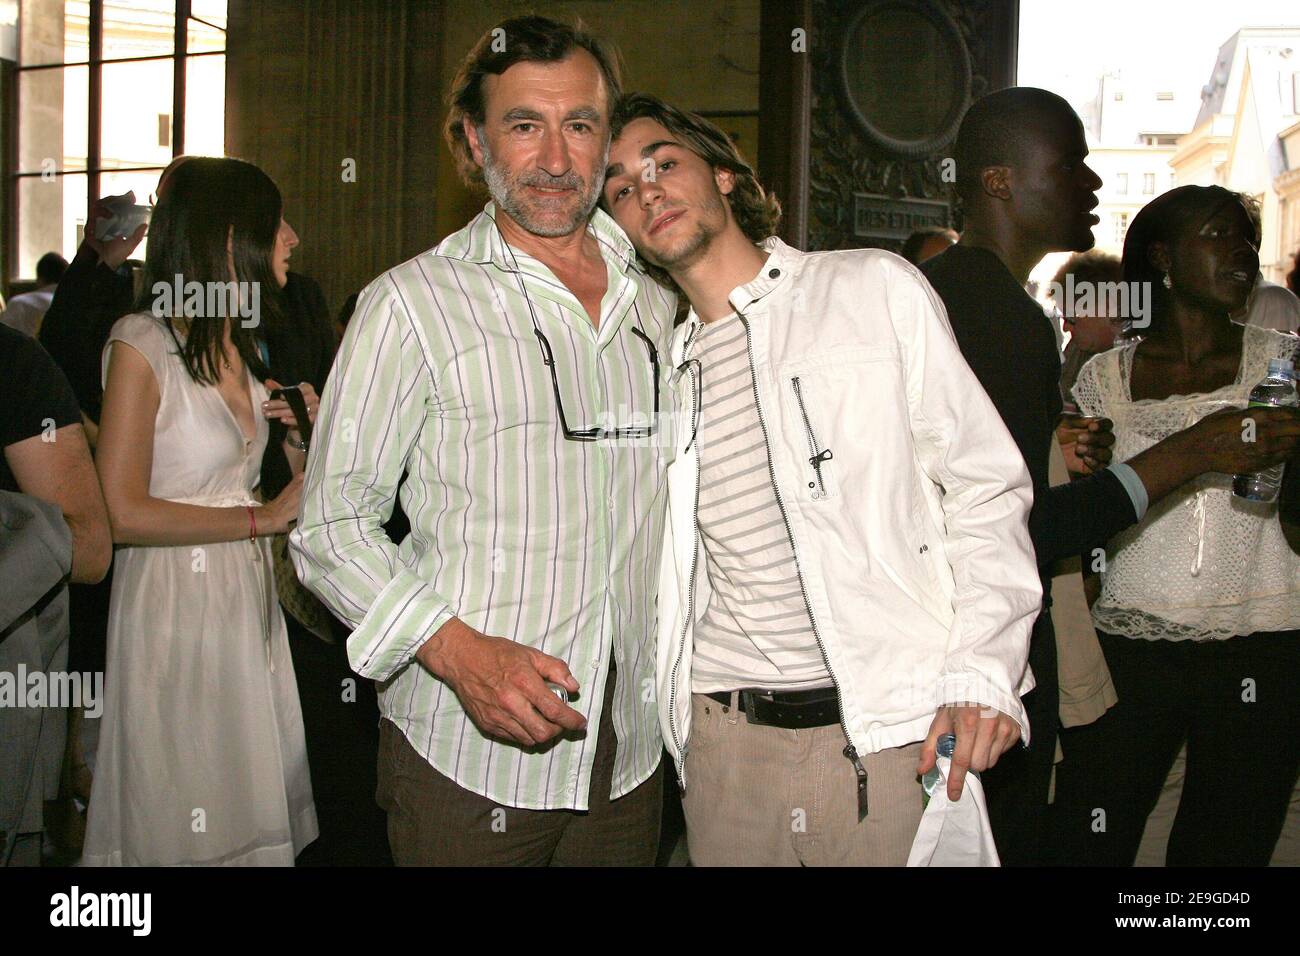 L'acteur français Christophe Malavoy et son fils Romain assistent au défilé de mode Smalto Men Printemps-été 2007 à Paris, France, le 3 juillet 2006. Photo de Nebinger-Taamallah/ABACAPRESS.COM Banque D'Images